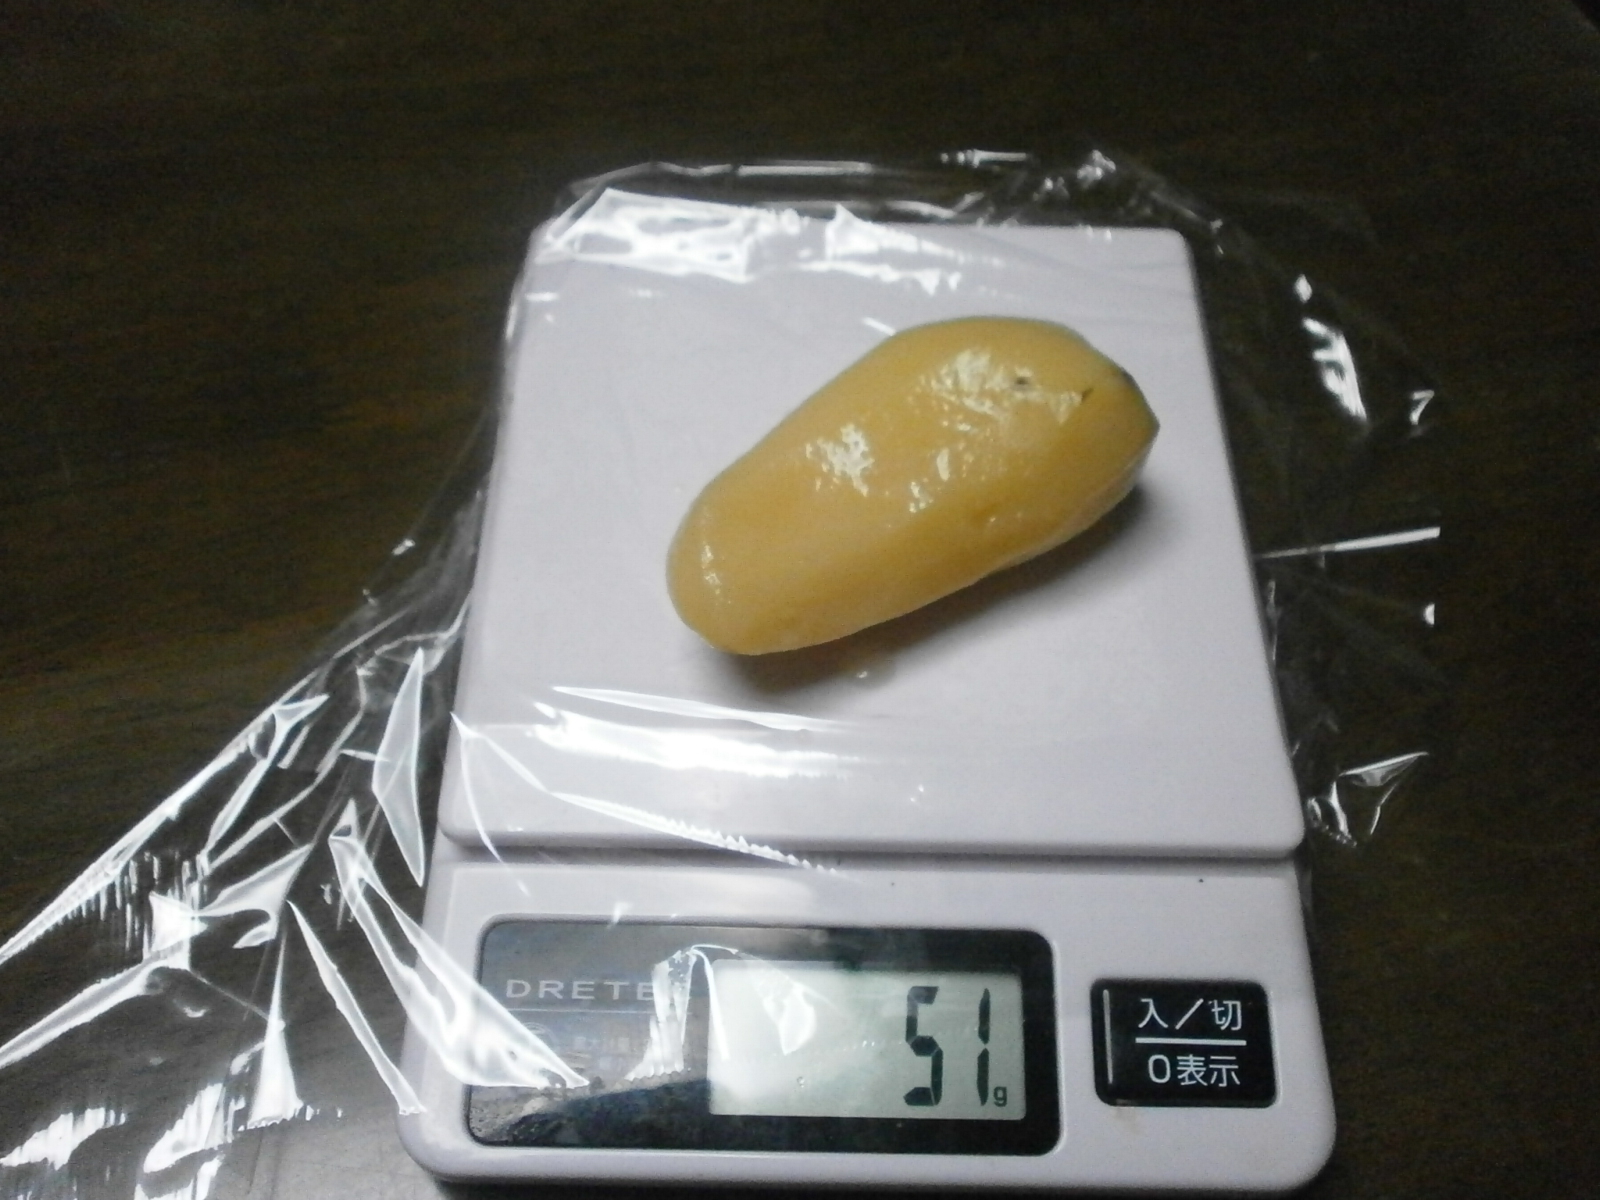 Potato (58g/51g)